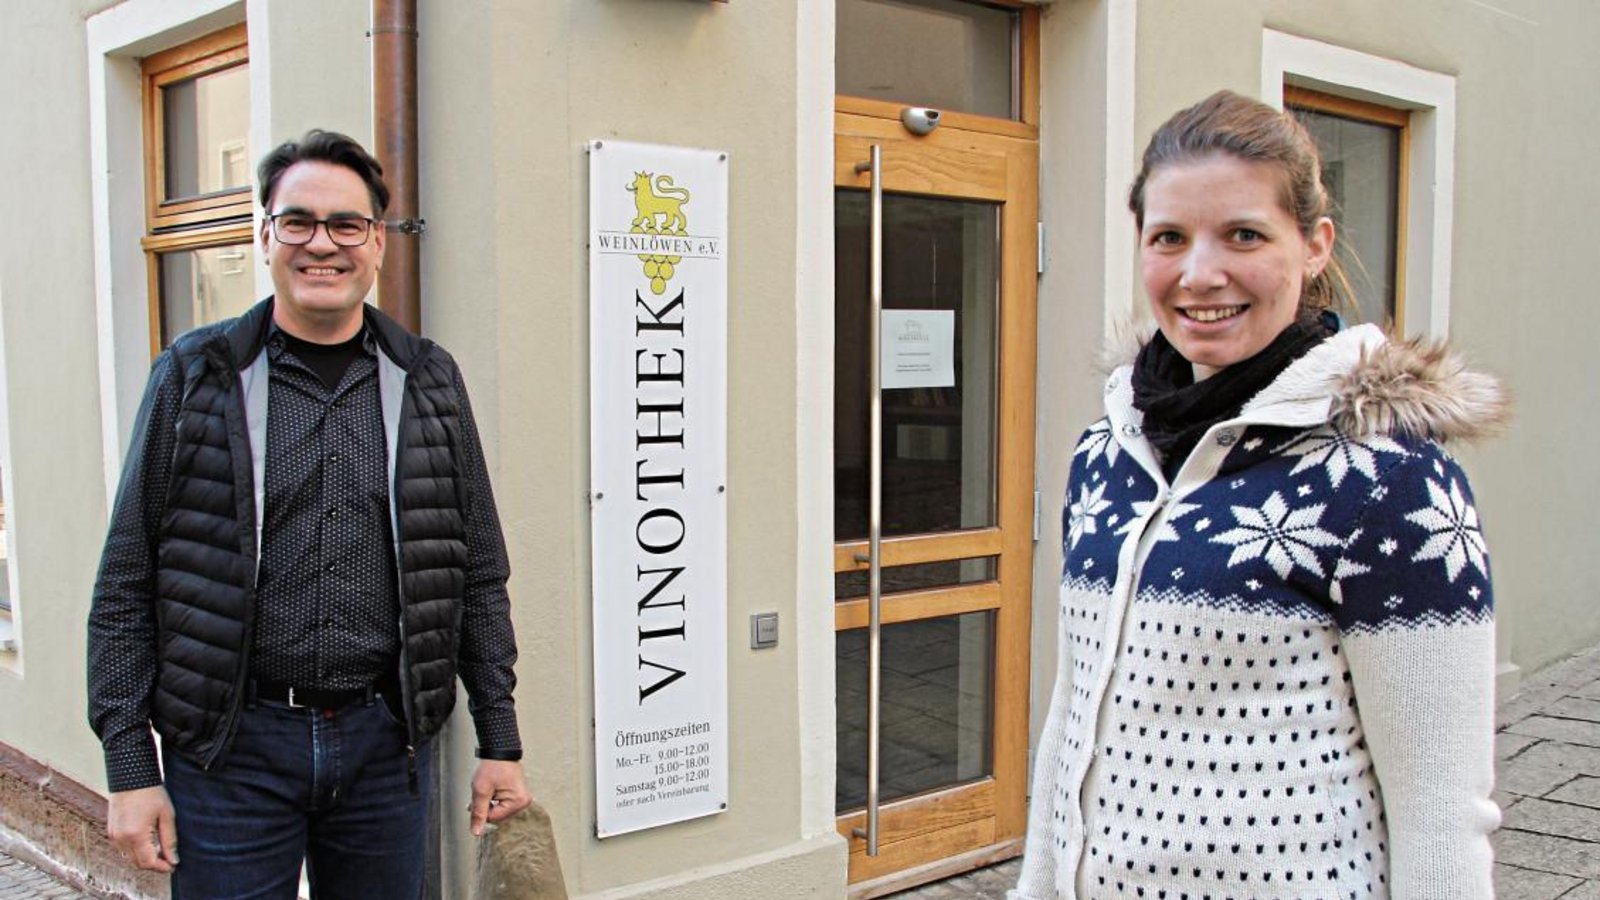 Martin Fischer und Mara Walz freuen sich schon auf die Wiedereröffnung der Vinothek, sobald sich ein Pächter gefunden hat.  Foto: Banholzer